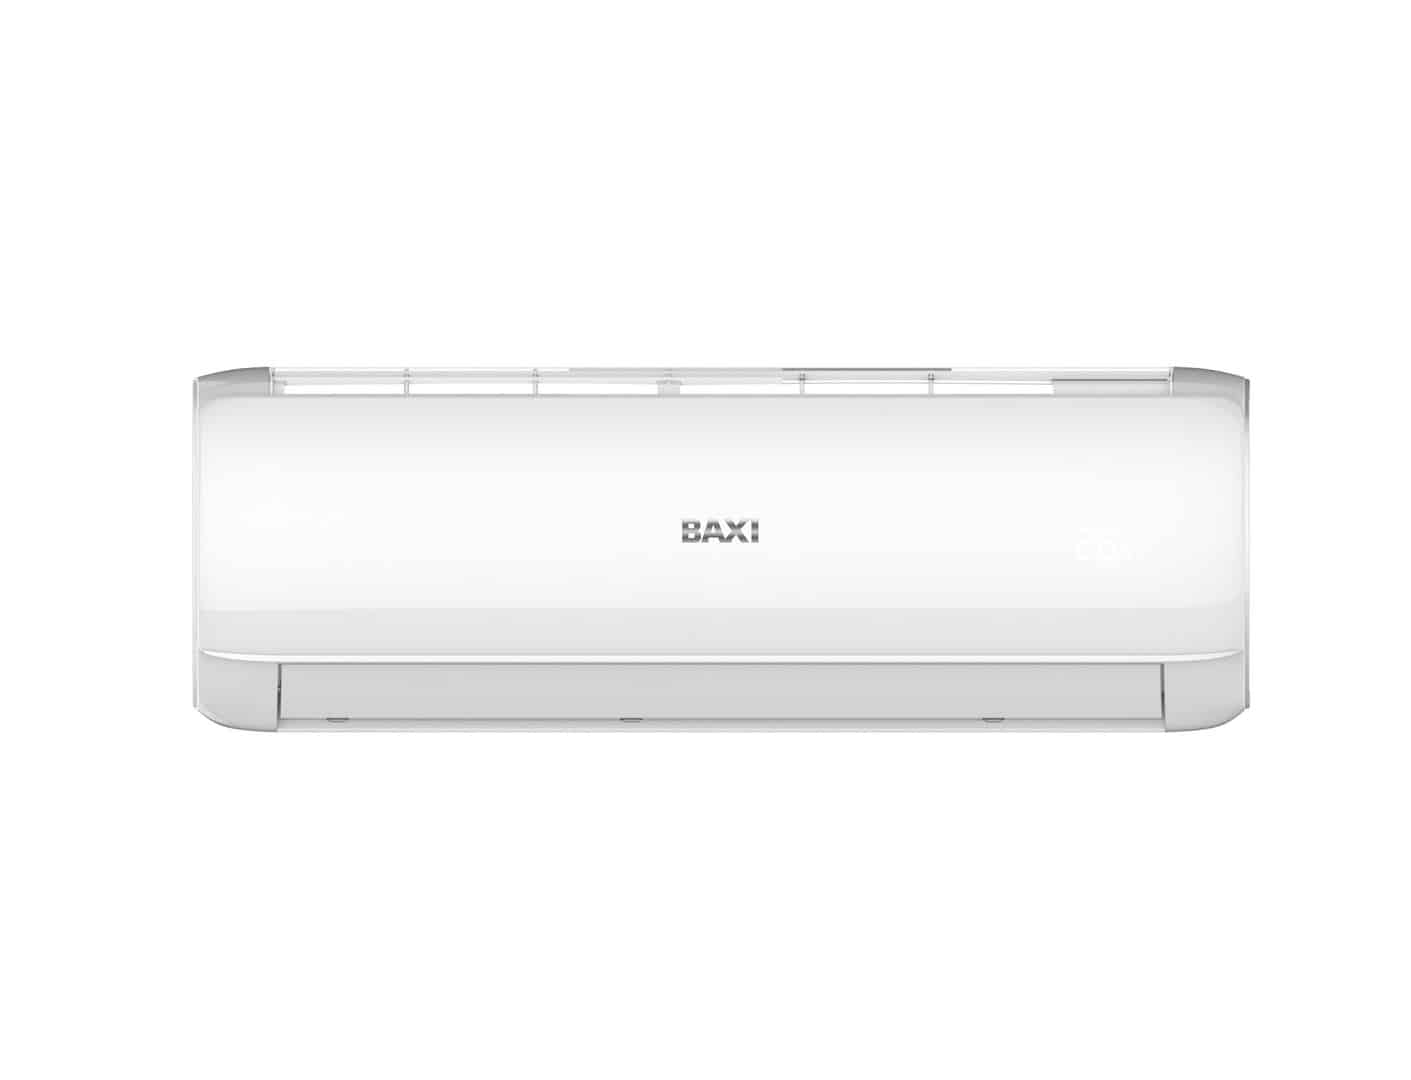 BAXI amplía su oferta de aire acondicionado de gama doméstica con el equipo R-32 QUILAK